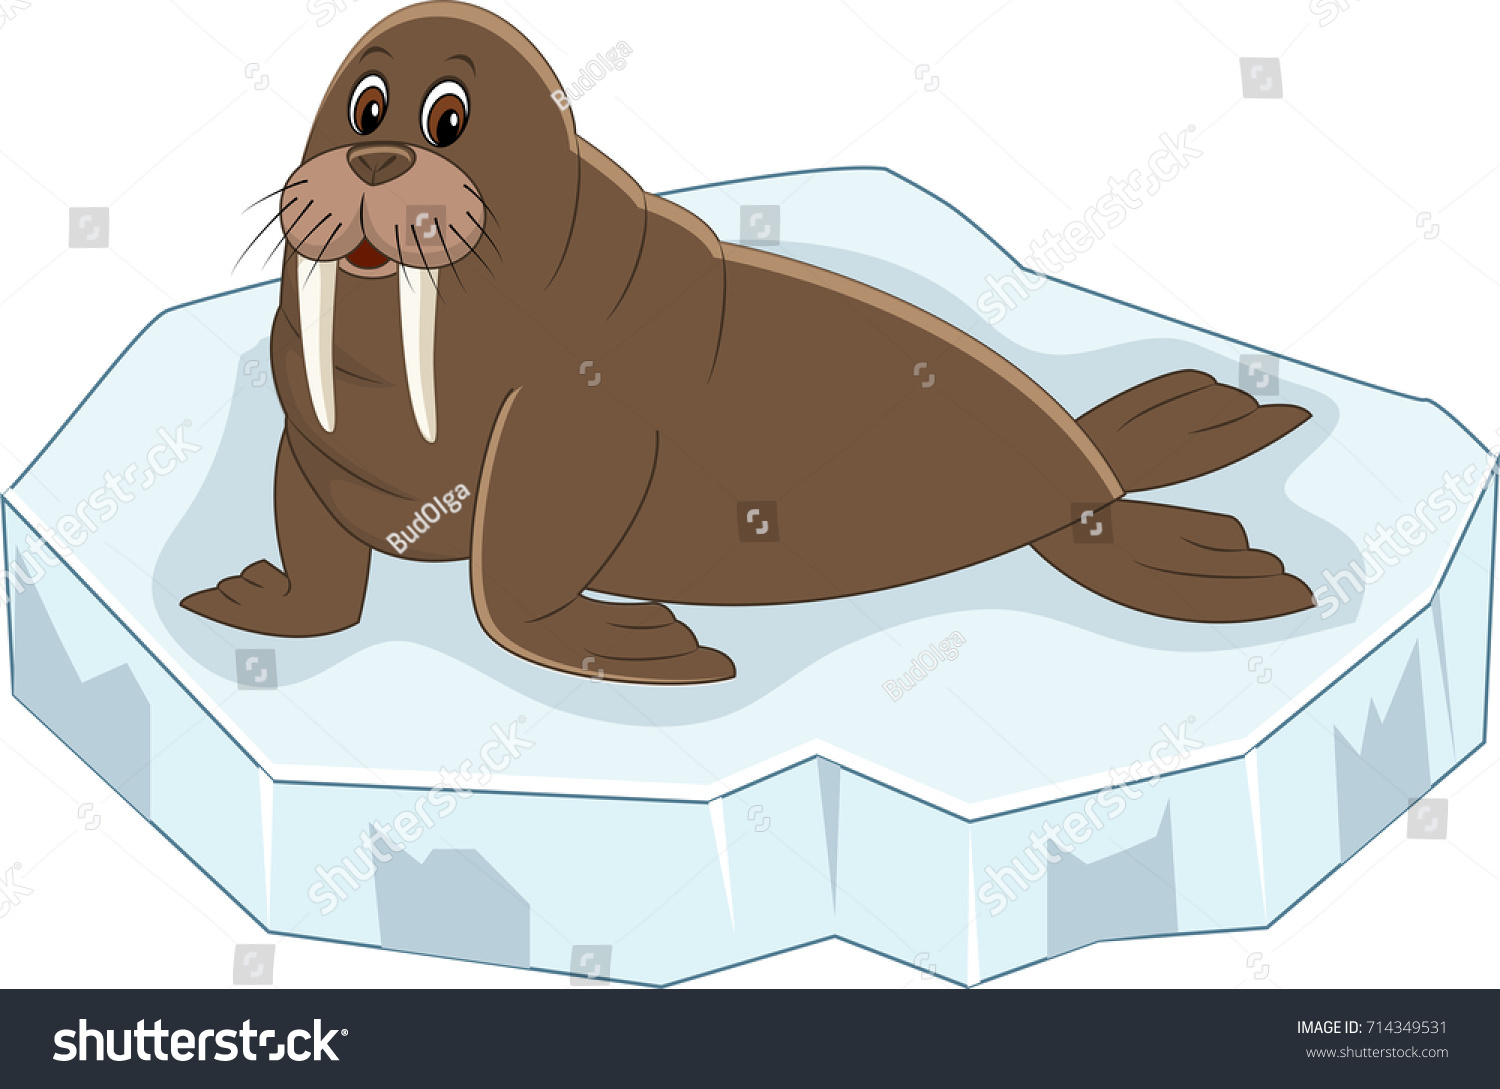 Рисование морж на льдине